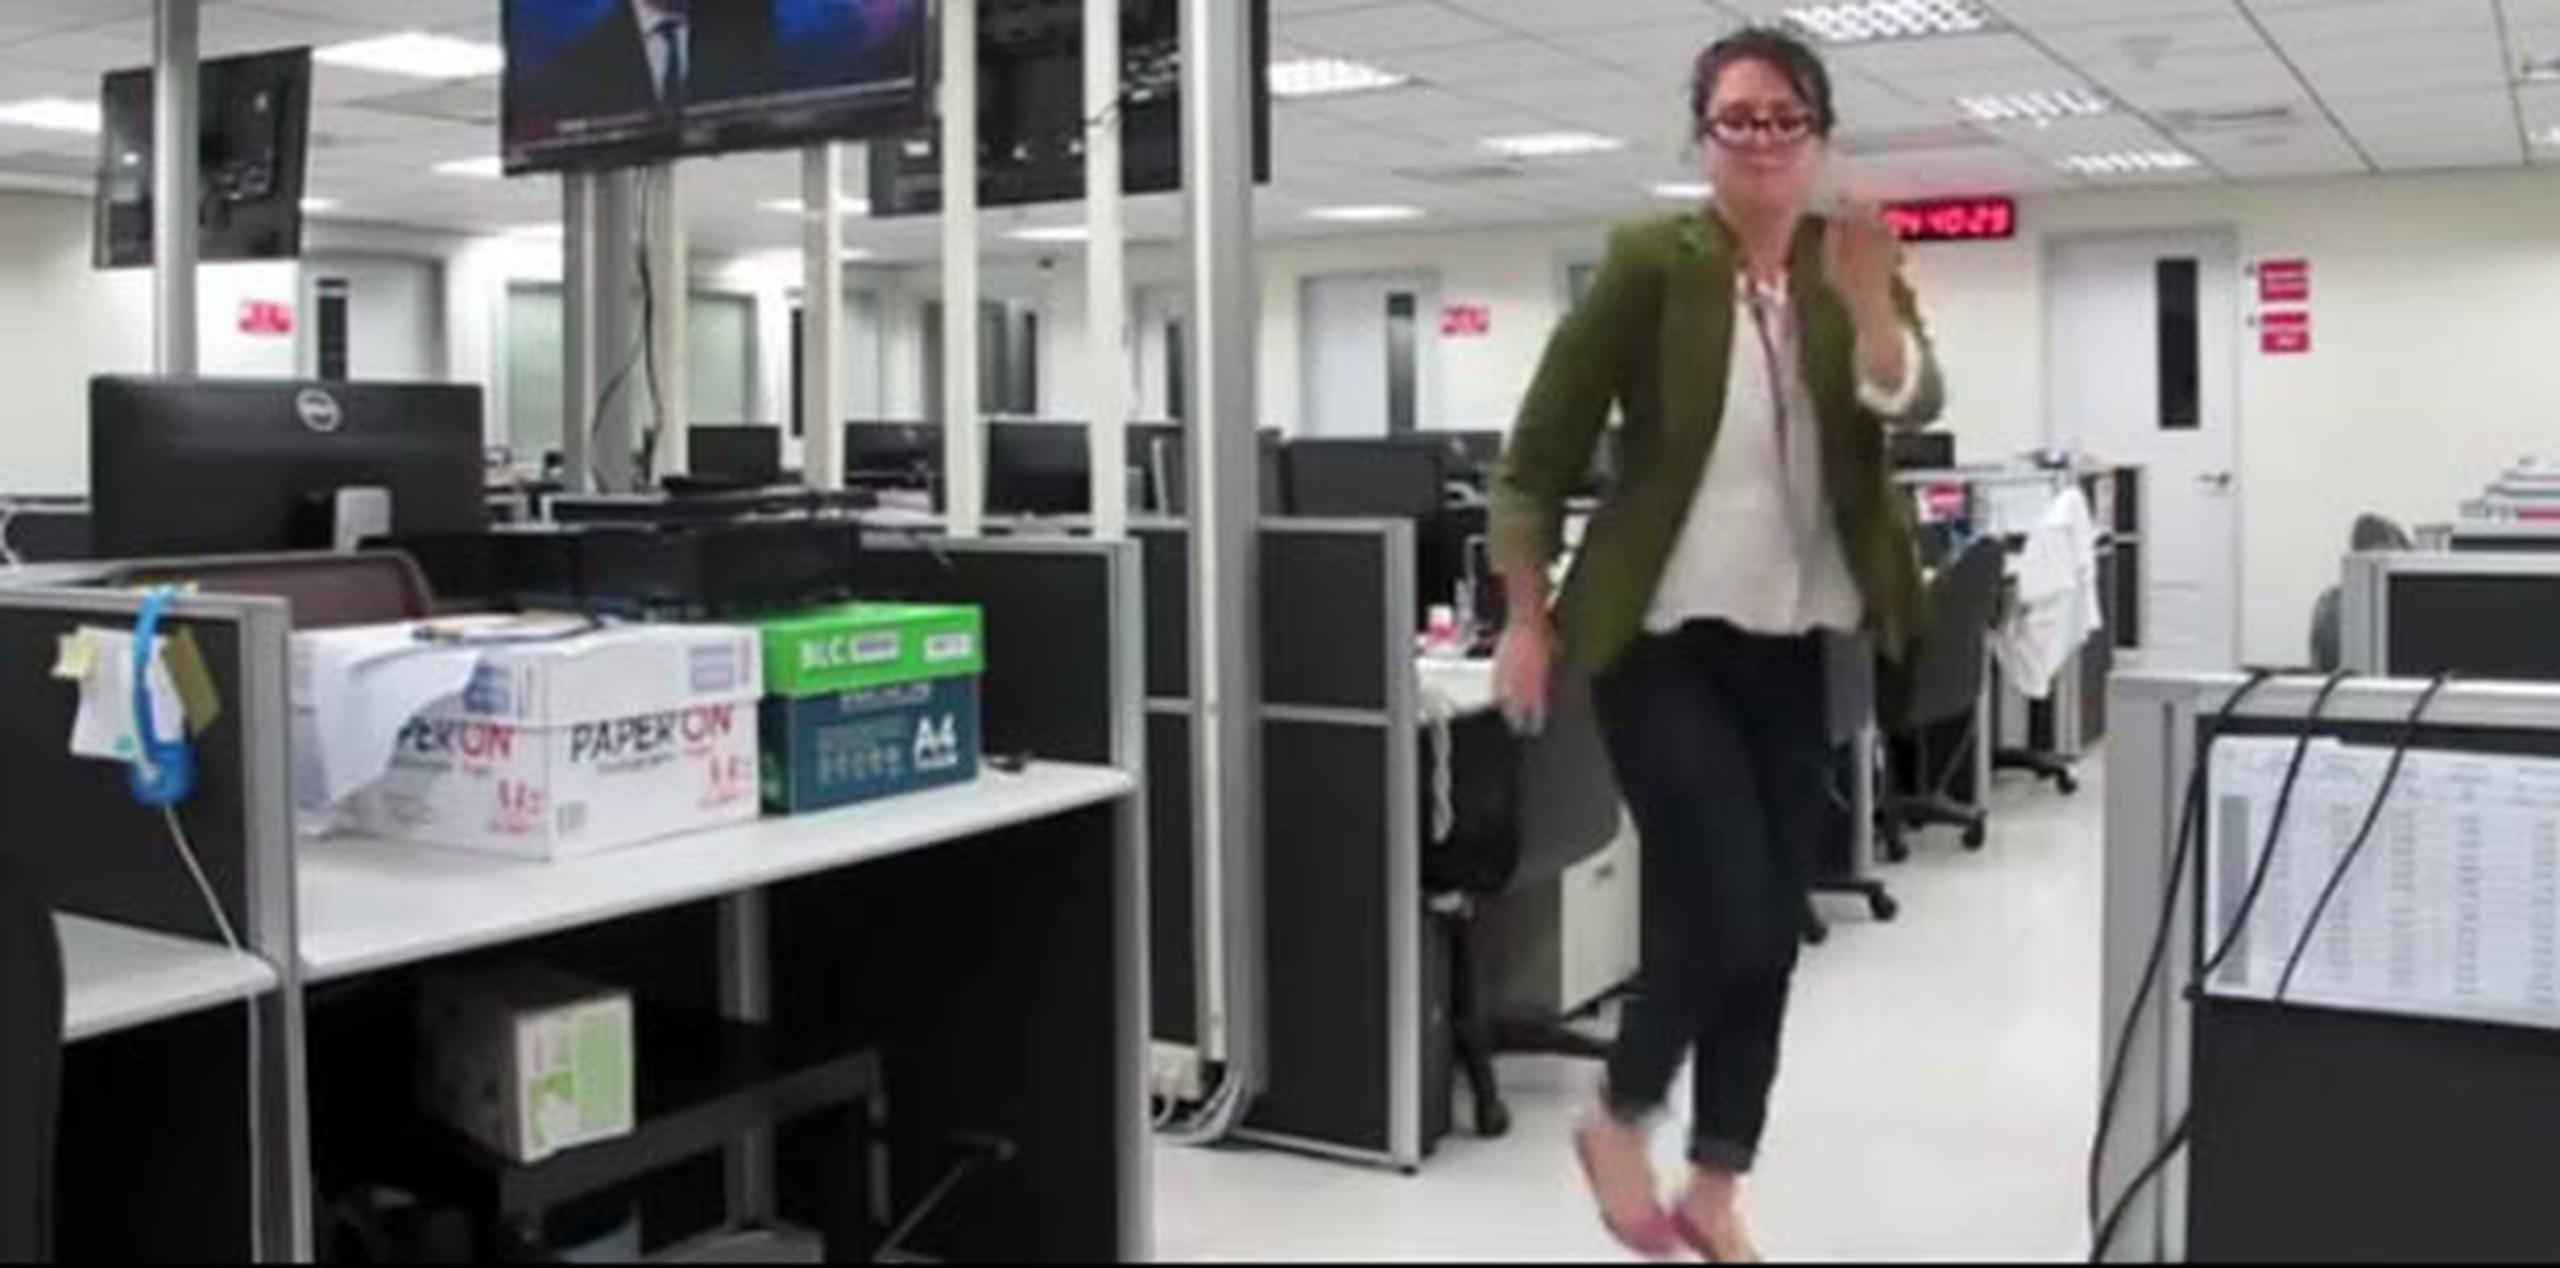 Baila alrededor de la oficina al son de la canción “Gone”, de Kanye West. (Youtube)